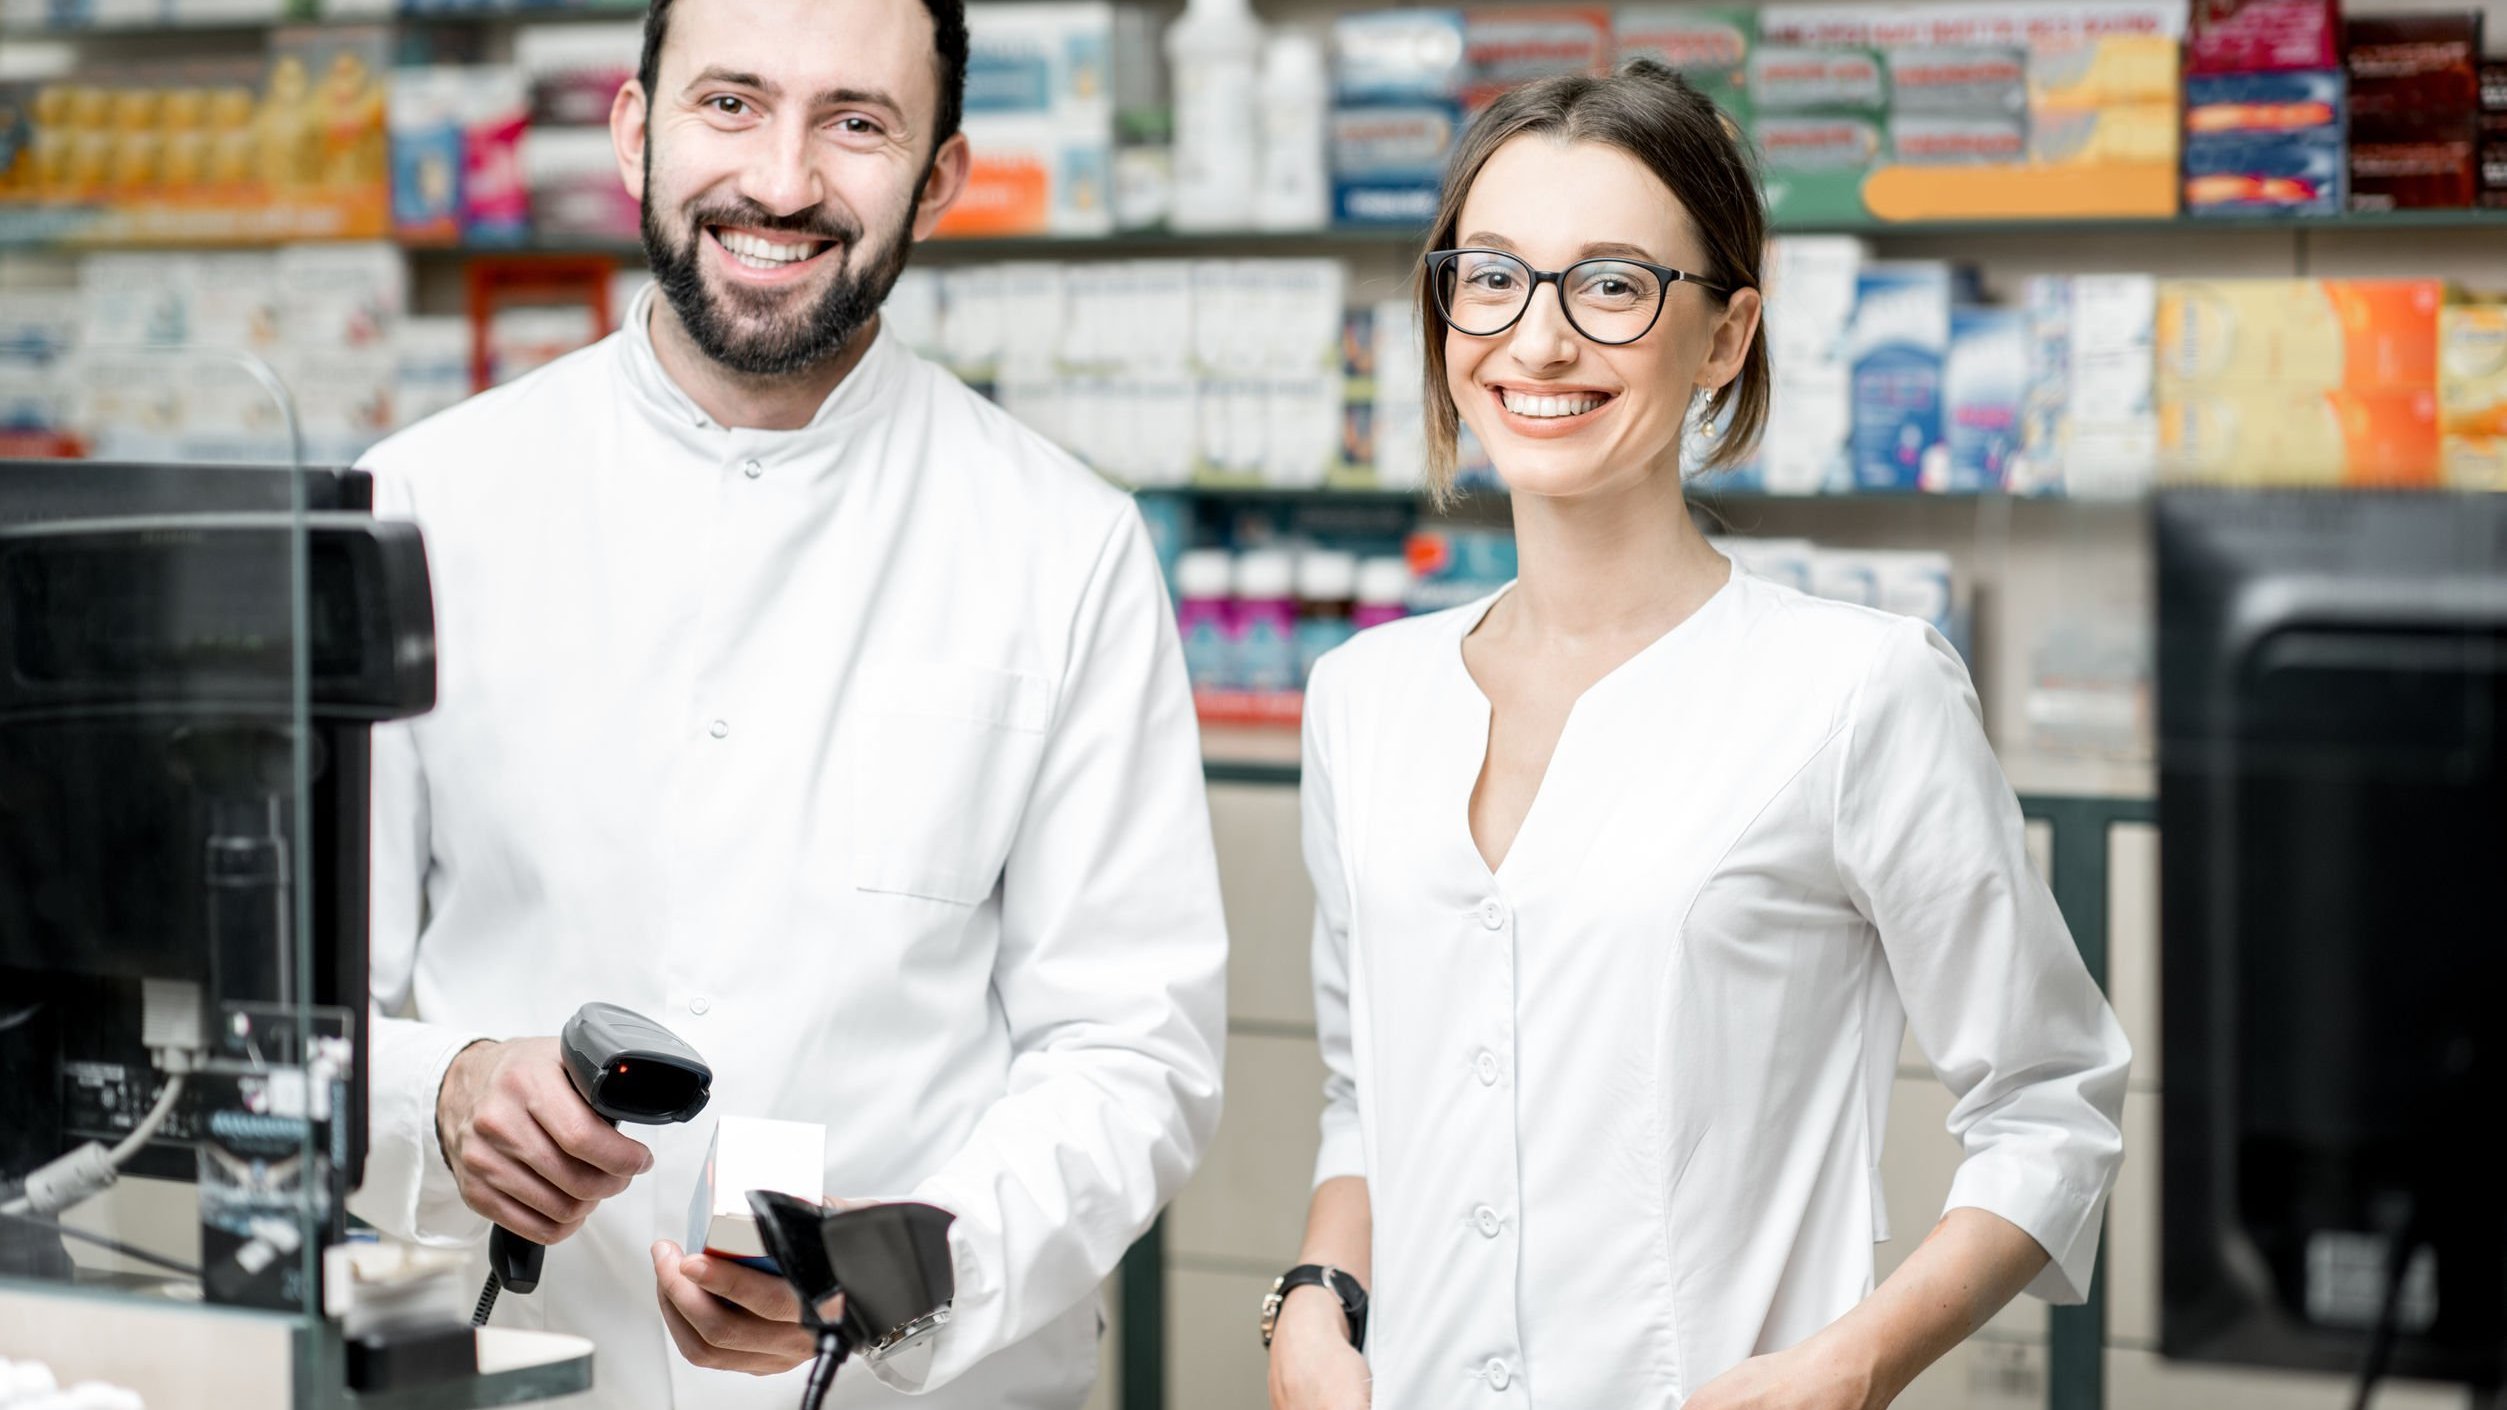 Homem e mulher, ambos farmacêuticos, sorrindo atrás de balcão de farmácia.